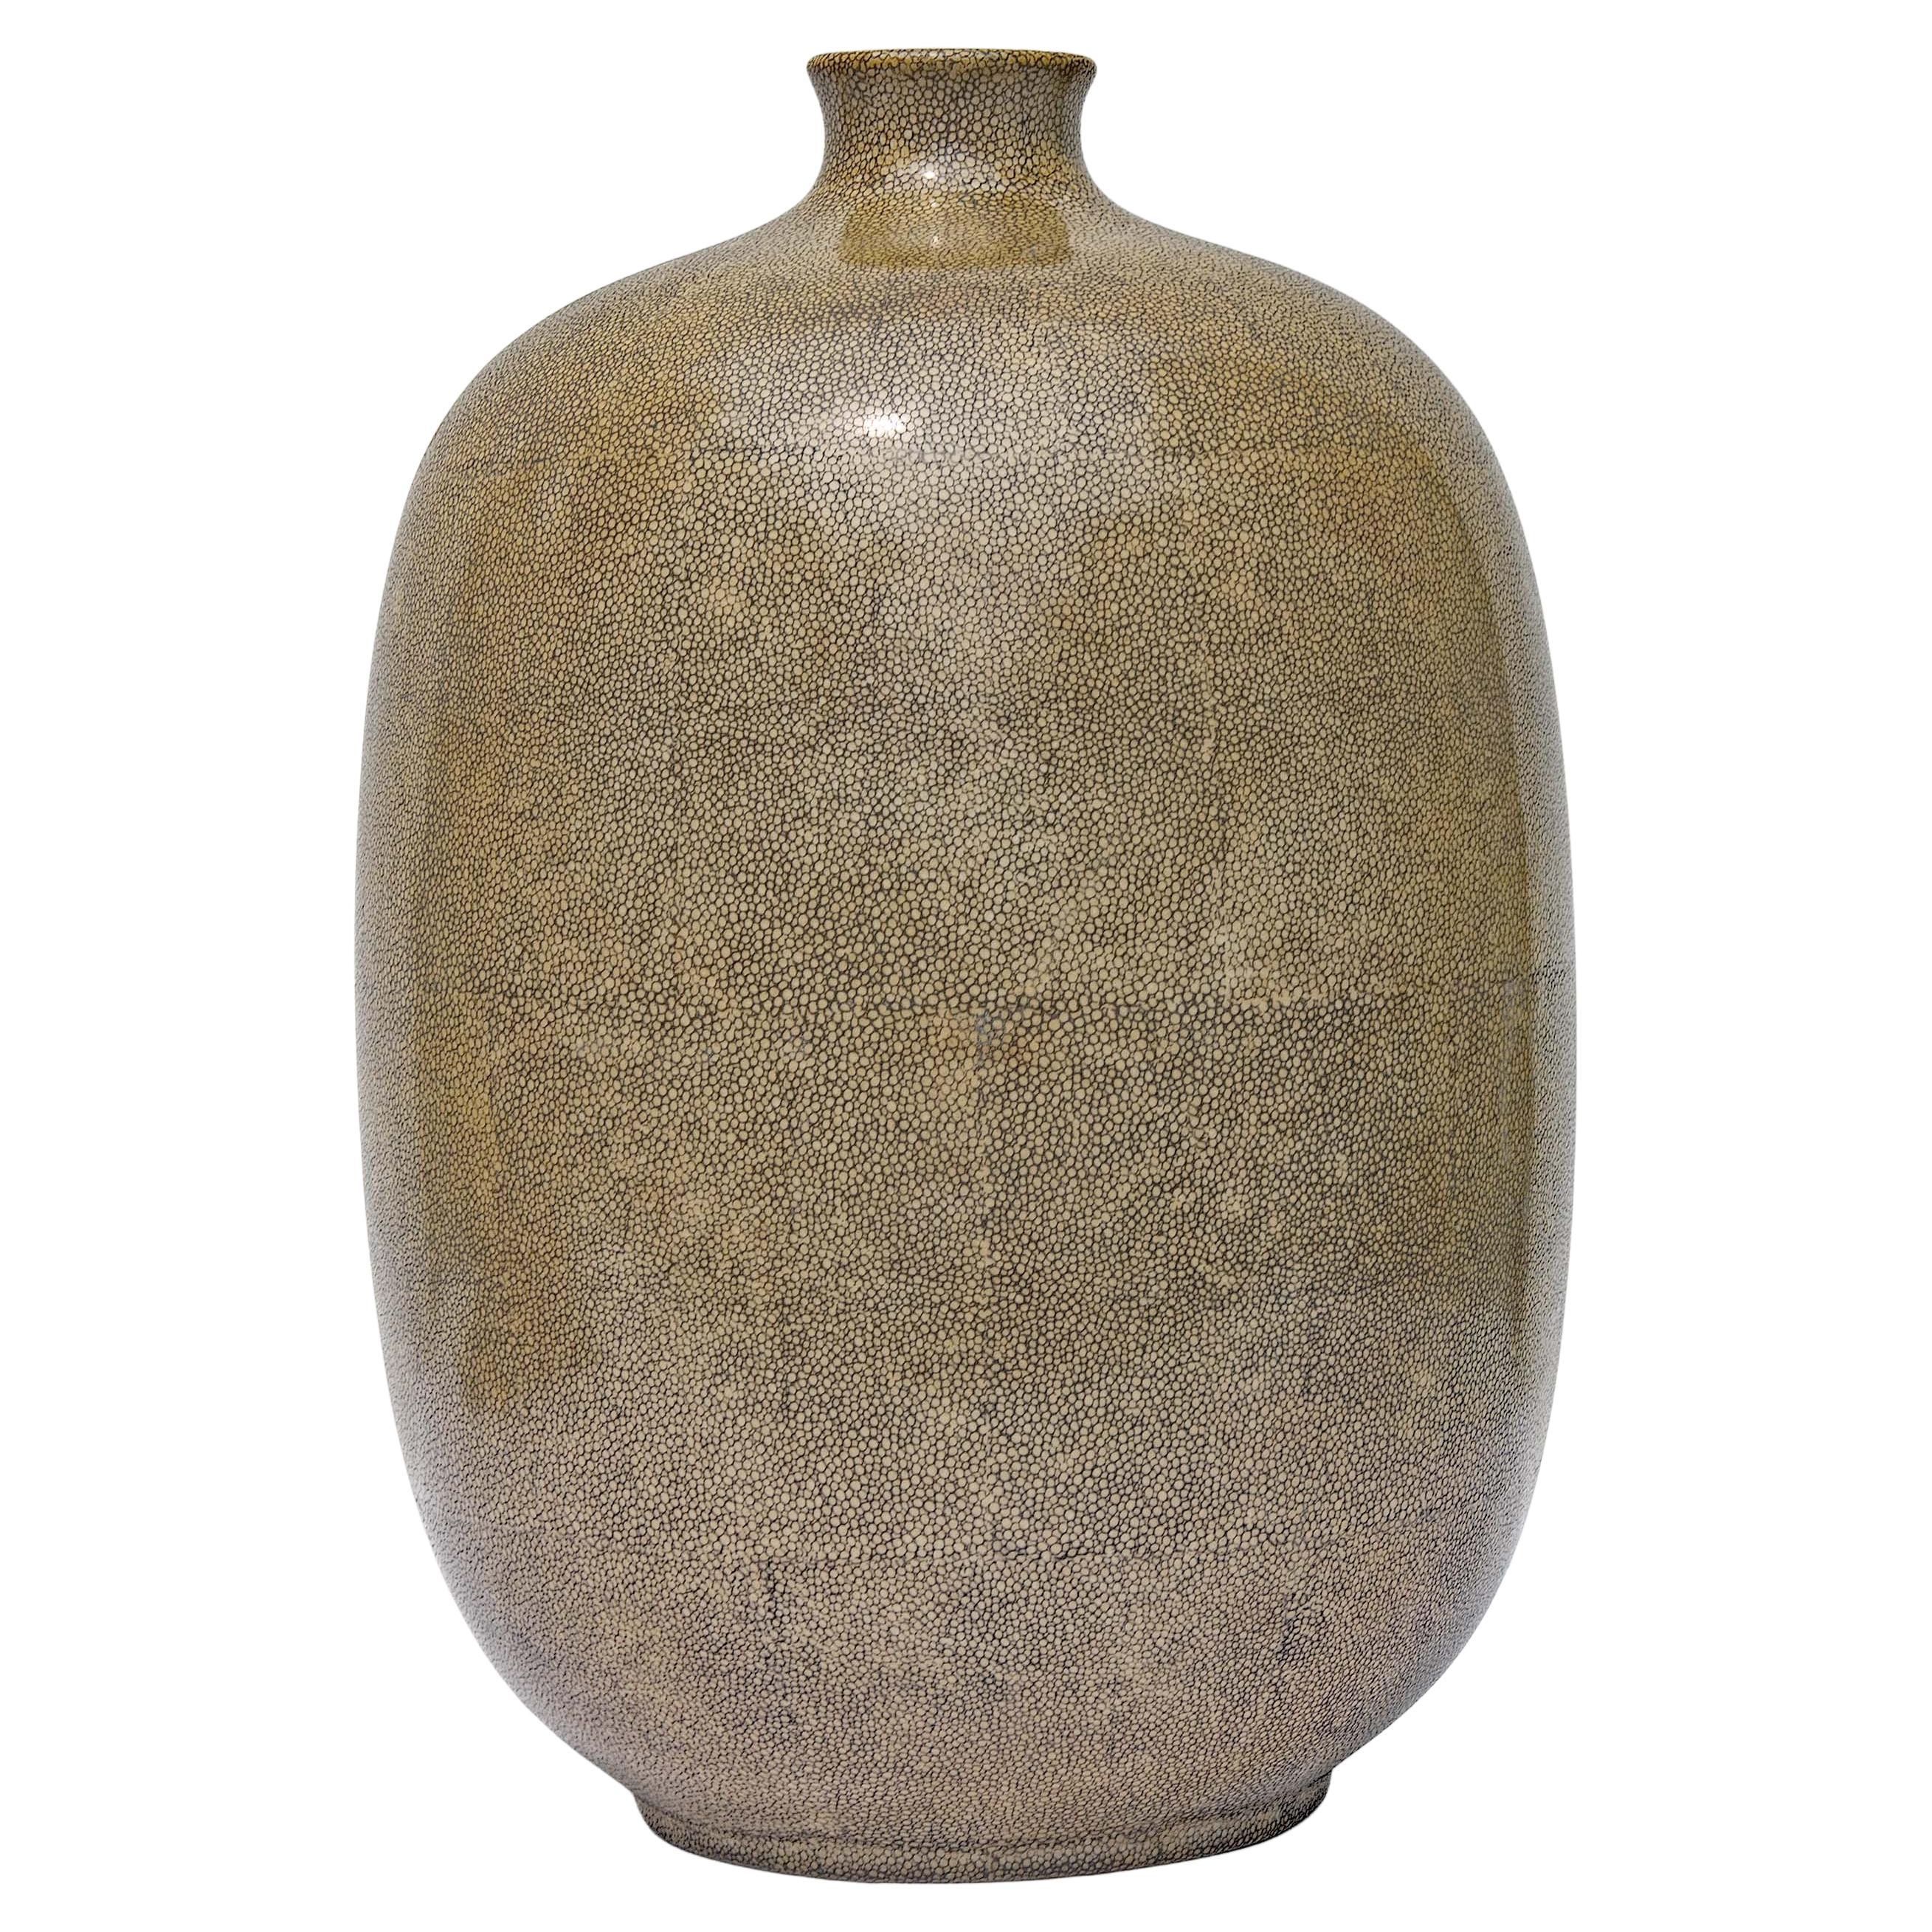 Shagreen Porcelain Vase or Lamp Base